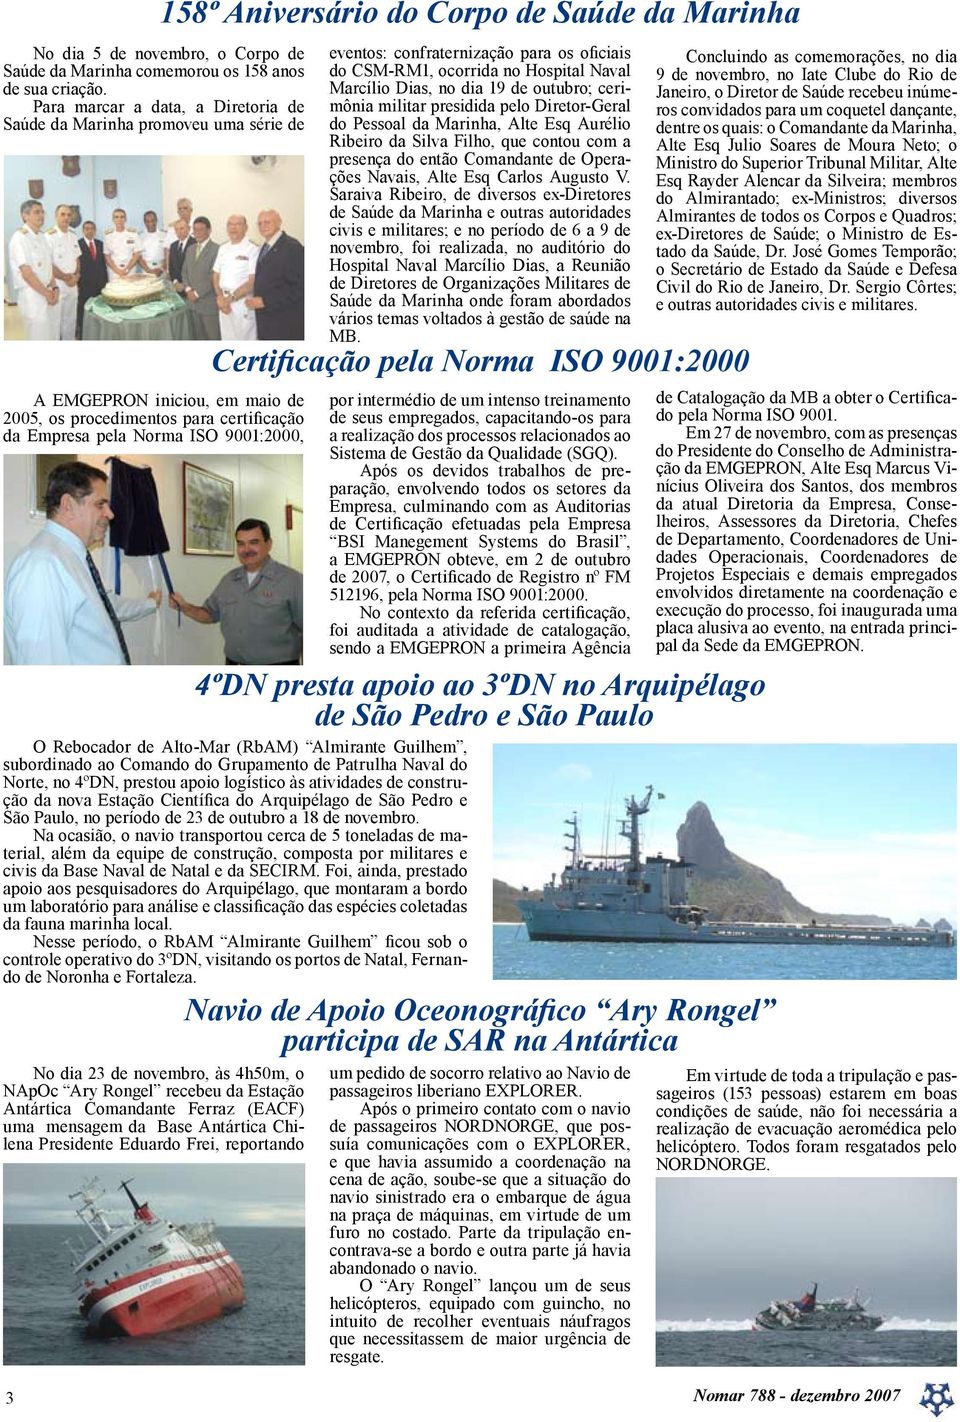 confraternização para os oficiais do CSM-RM1, ocorrida no Hospital Naval Marcílio Dias, no dia 19 de outubro; cerimônia militar presidida pelo Diretor-Geral do Pessoal da Marinha, Alte Esq Aurélio